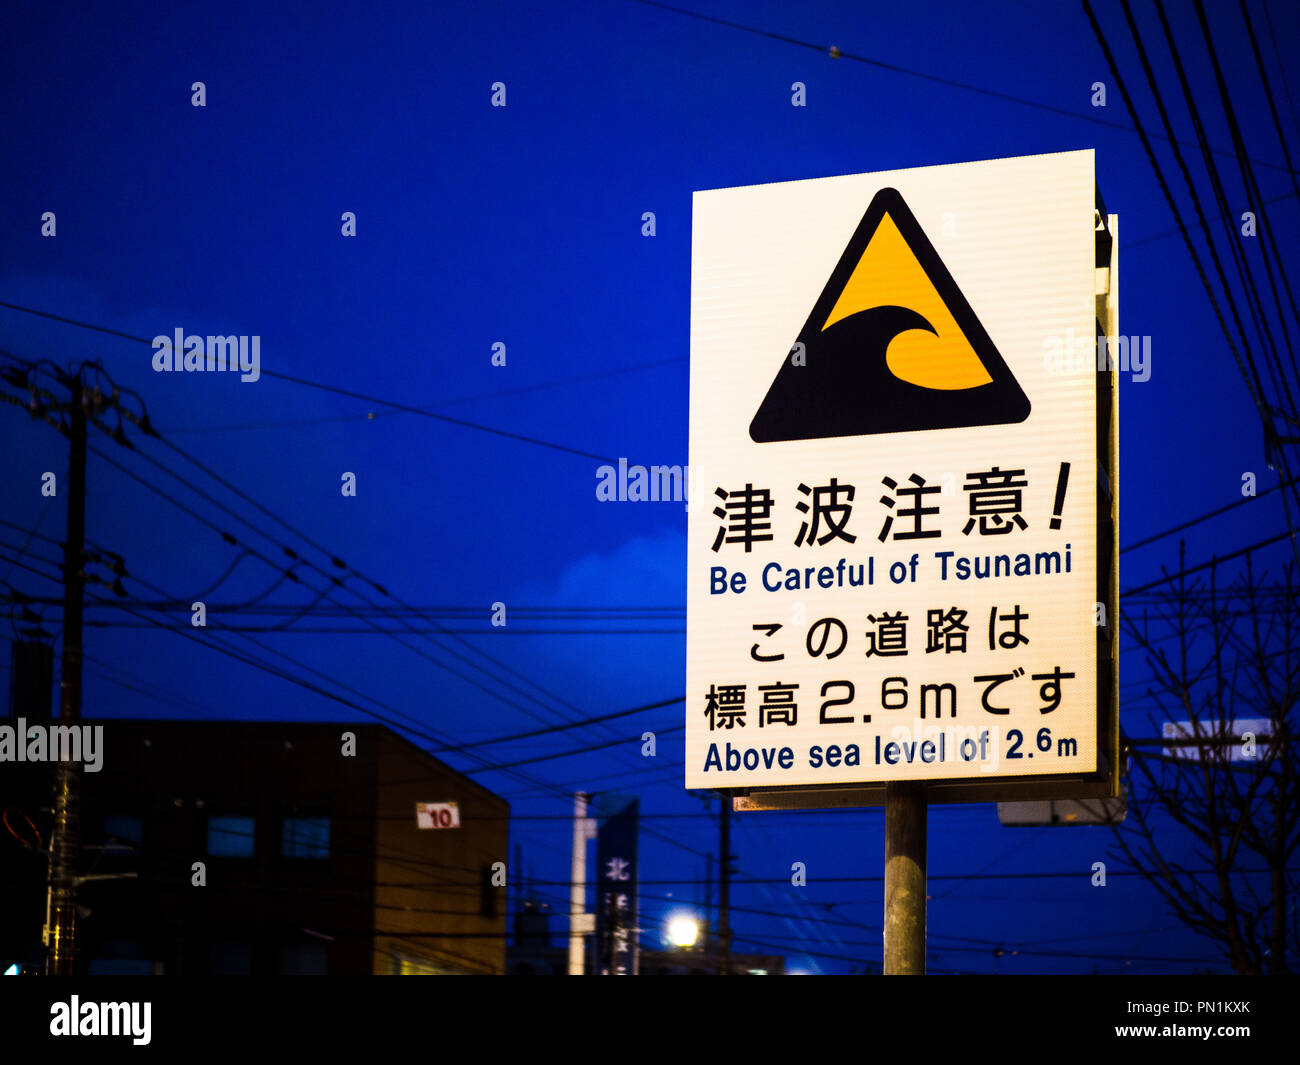 Panneau d'avertissement de tsunami Japon - un signe de danger de tsunami dans le port de la ville de Hakodate sur l'île d'Hokkaido au Japon Banque D'Images